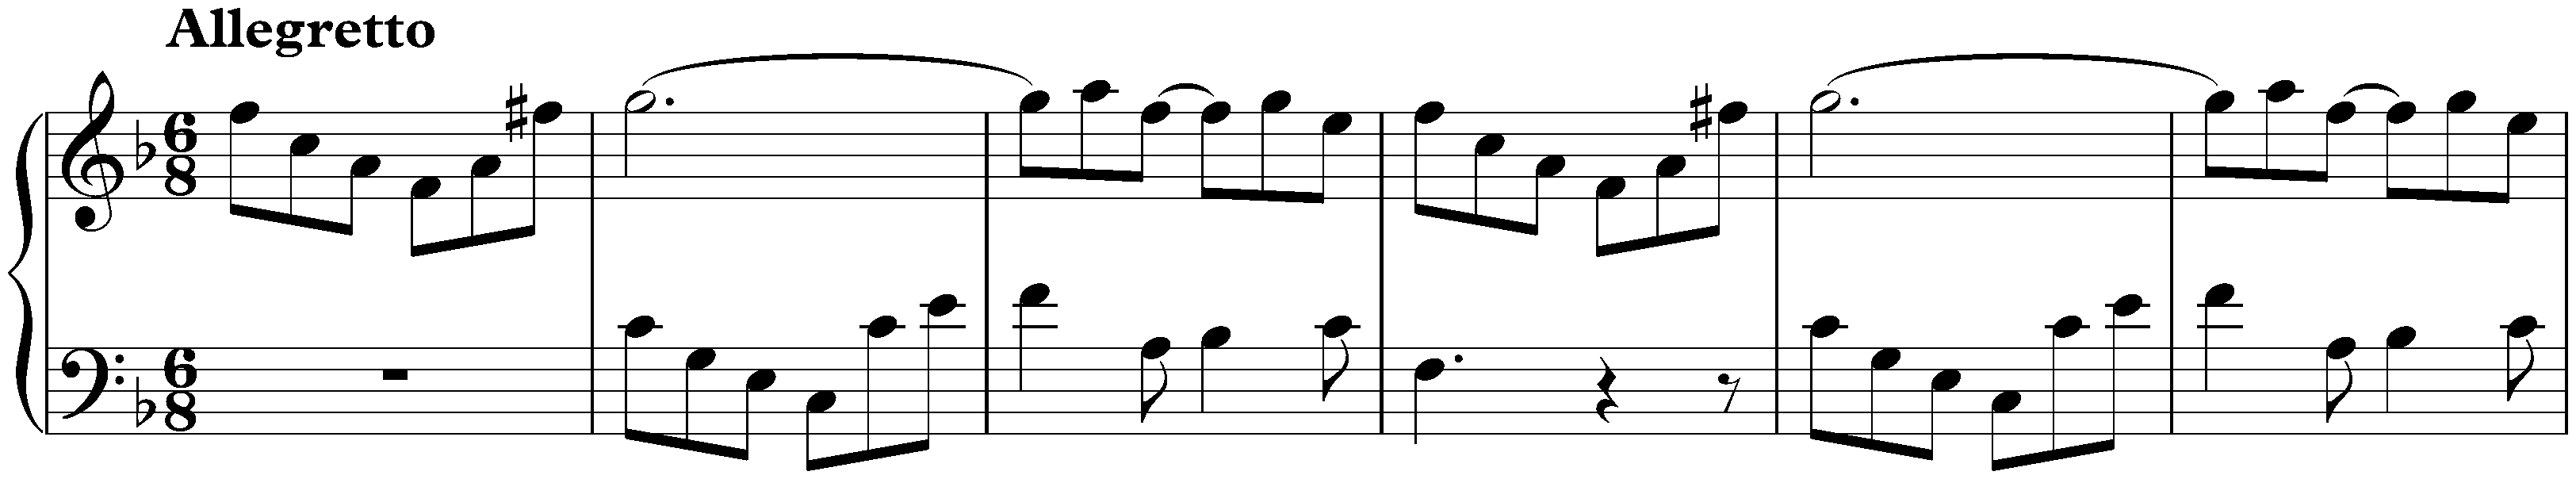 Sonata in F major, K. 541